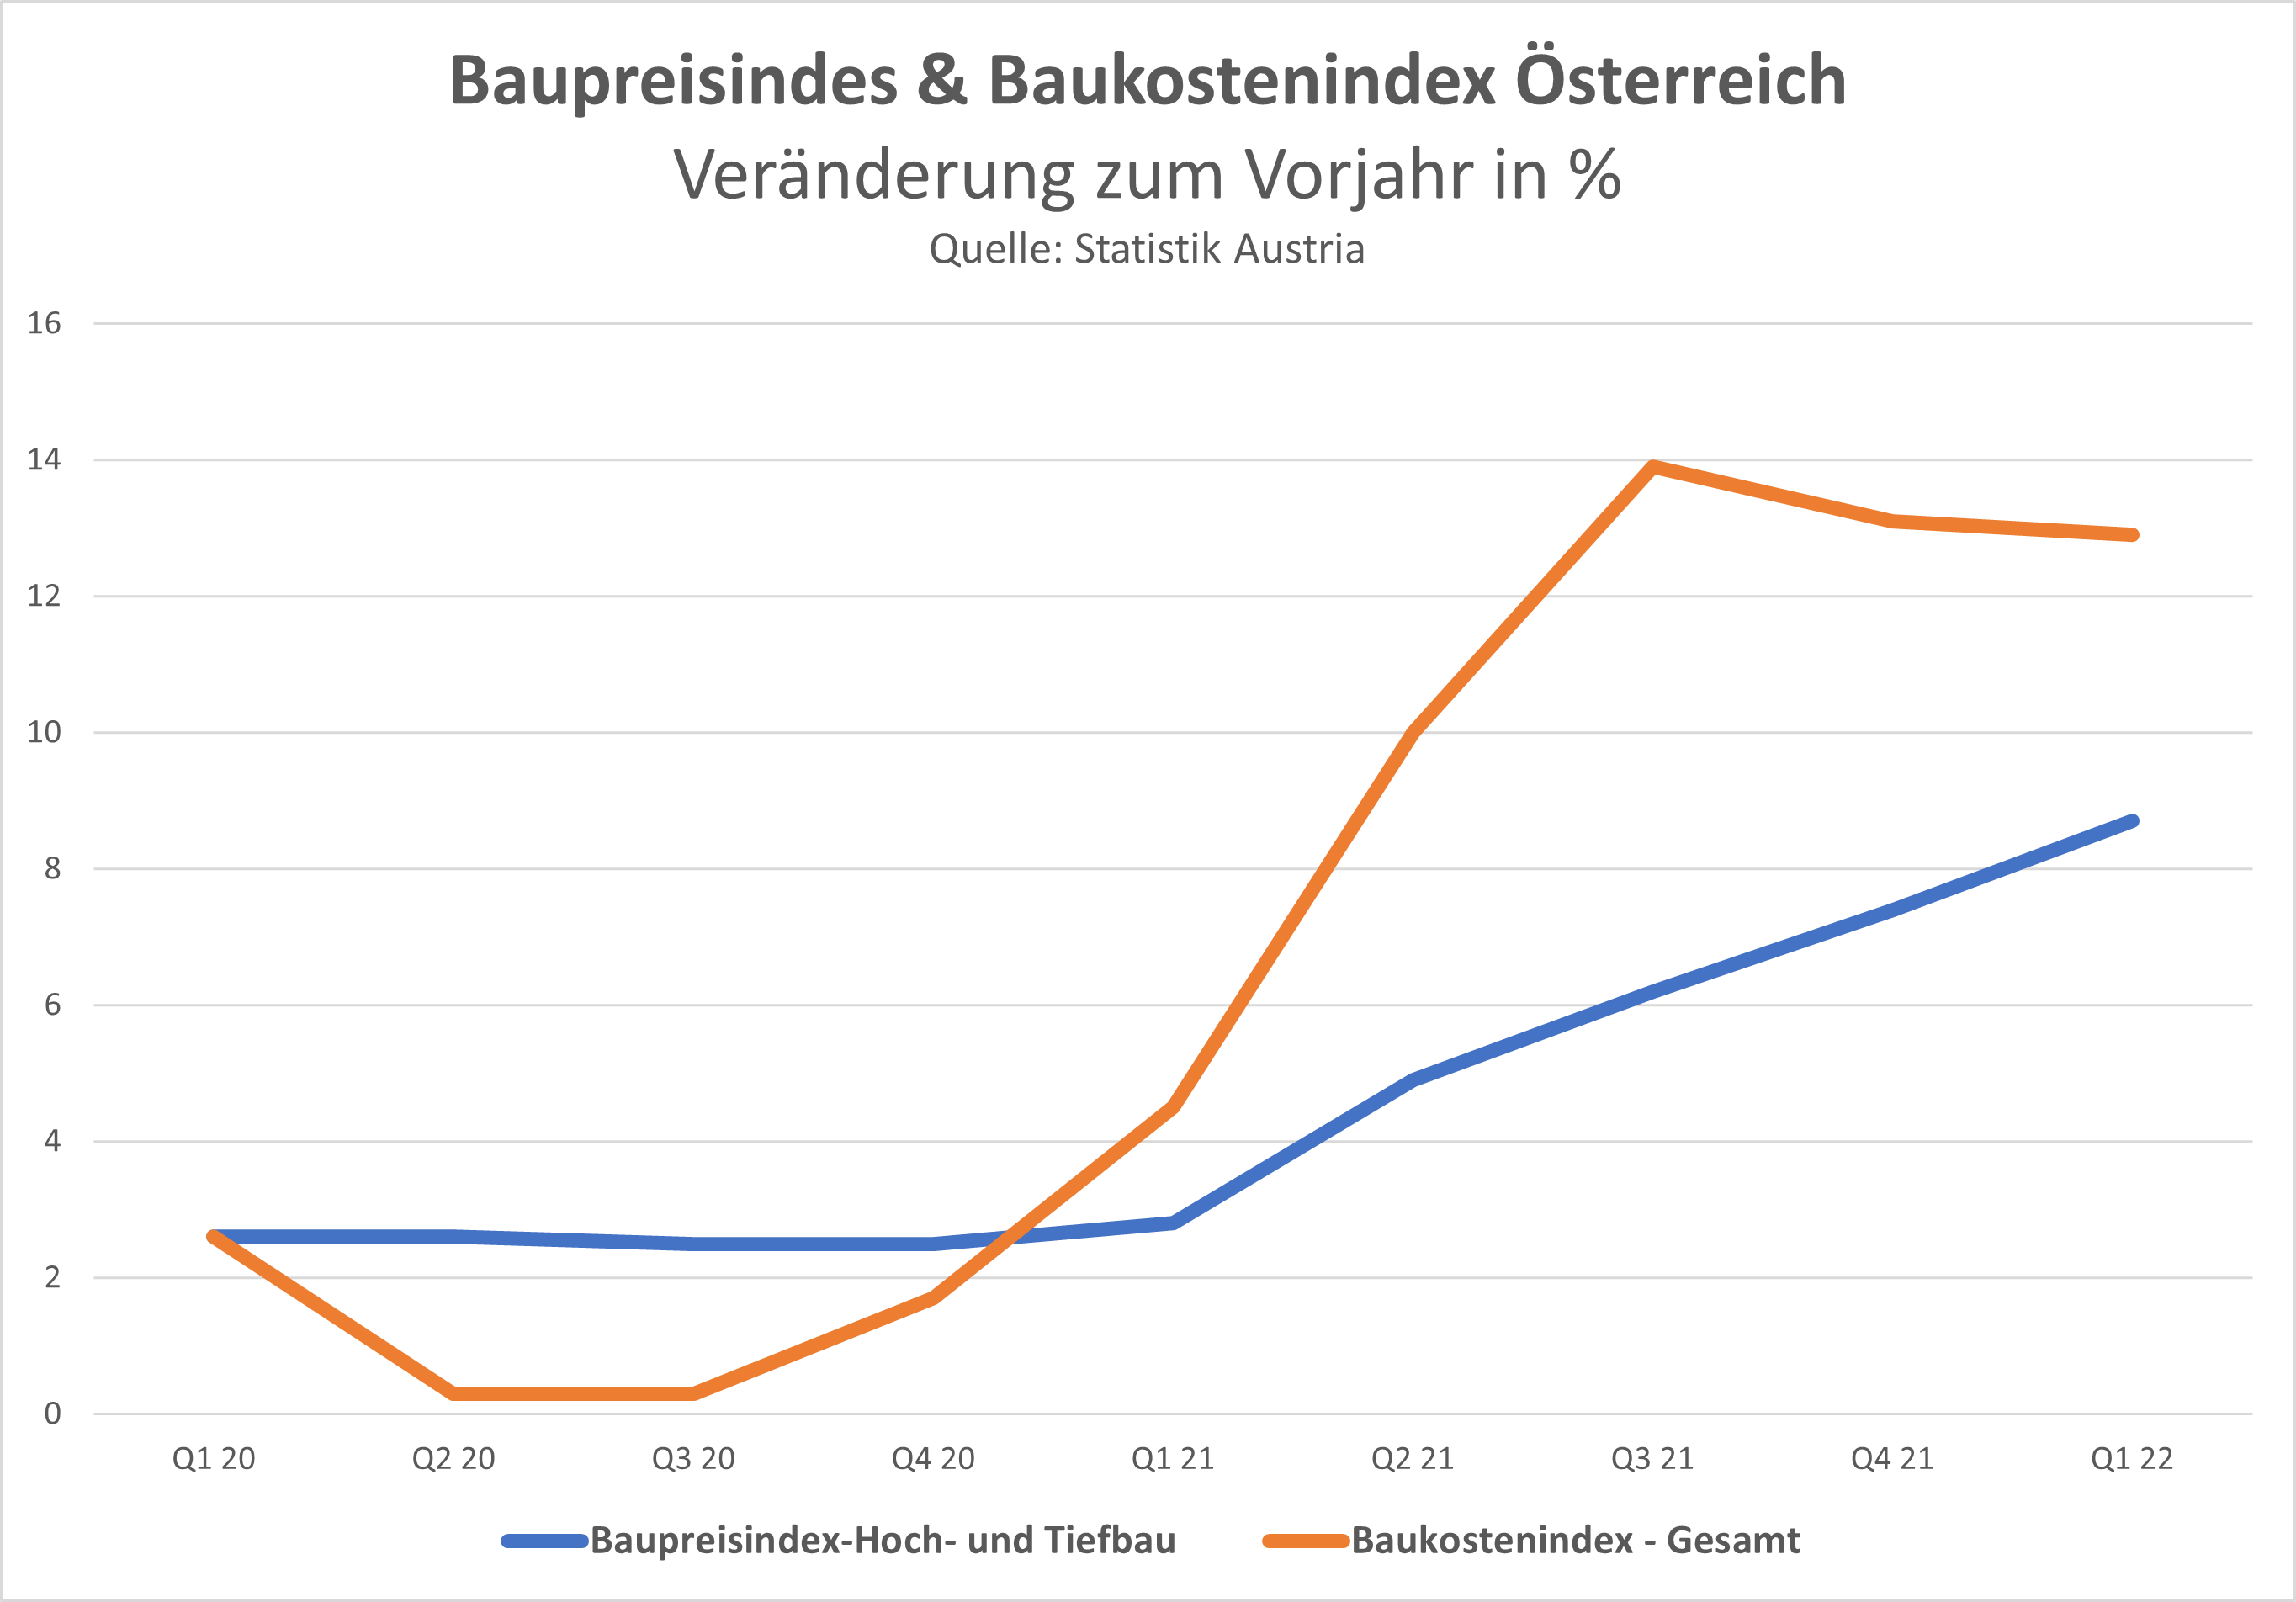 Baukosten Österreich - Entwicklung Baukostenindex und Baupreisindex in Österreich Q1 2020 bis Q1 2022